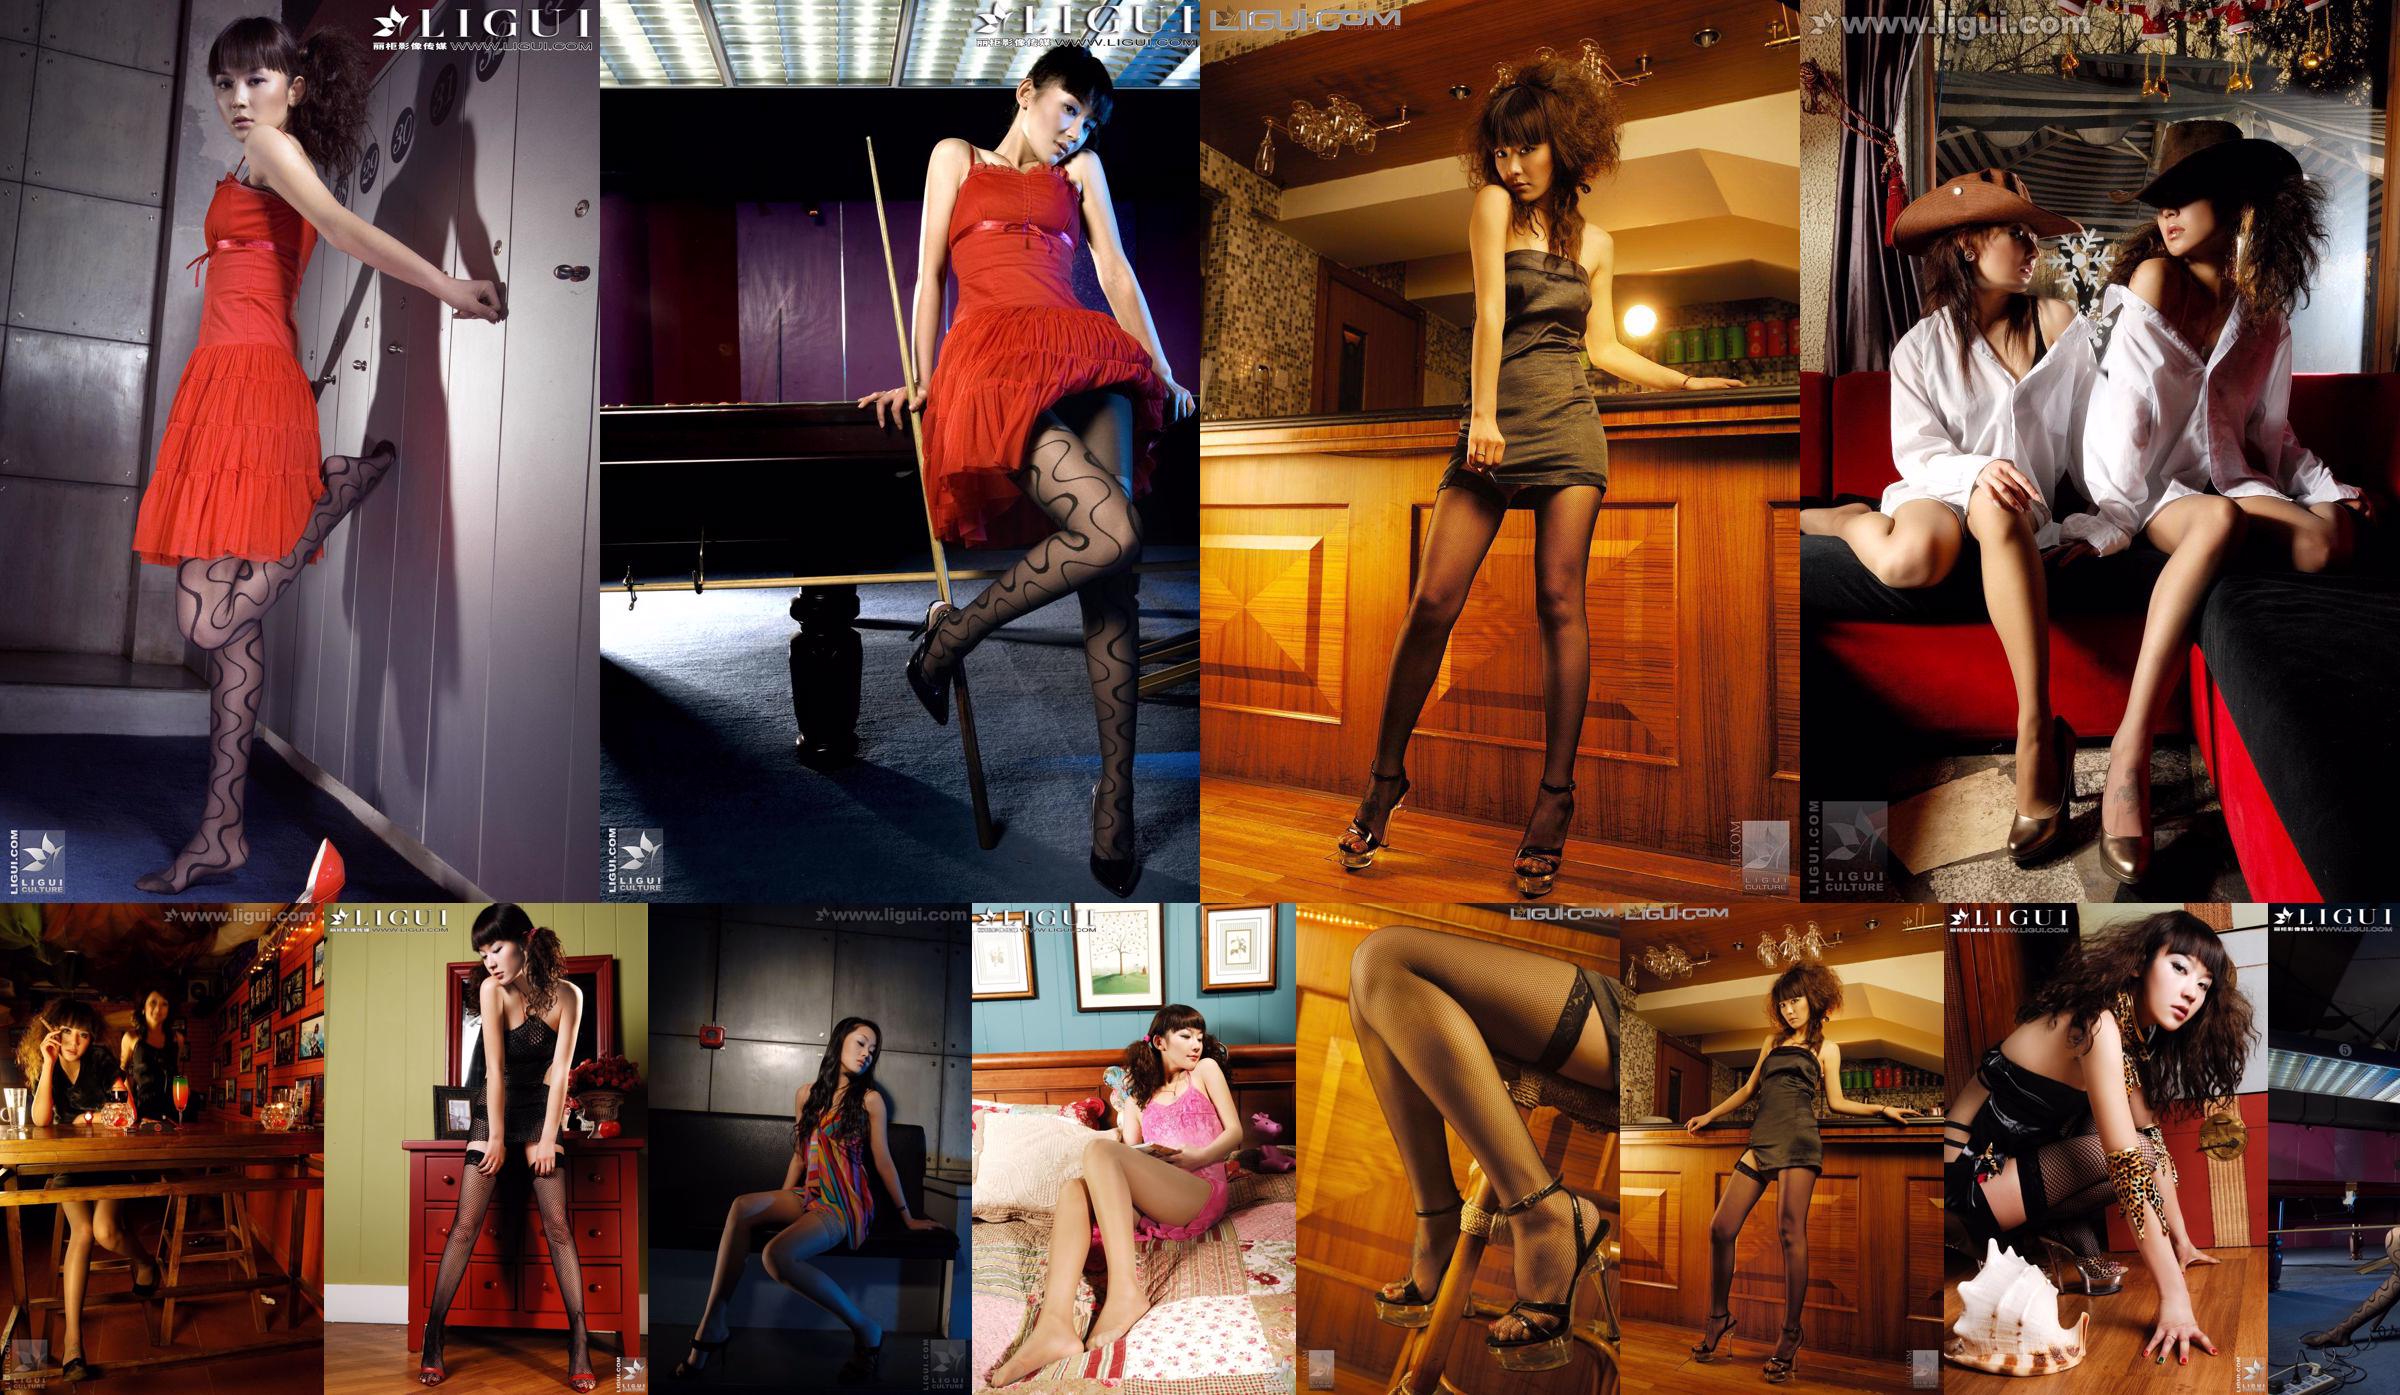 [丽 柜 LiGui] 모델 Mi Huimei, 켈리 "스타킹의 유혹"아름다운 다리와 옥 발 사진 사진 No.10a8a1 페이지 5